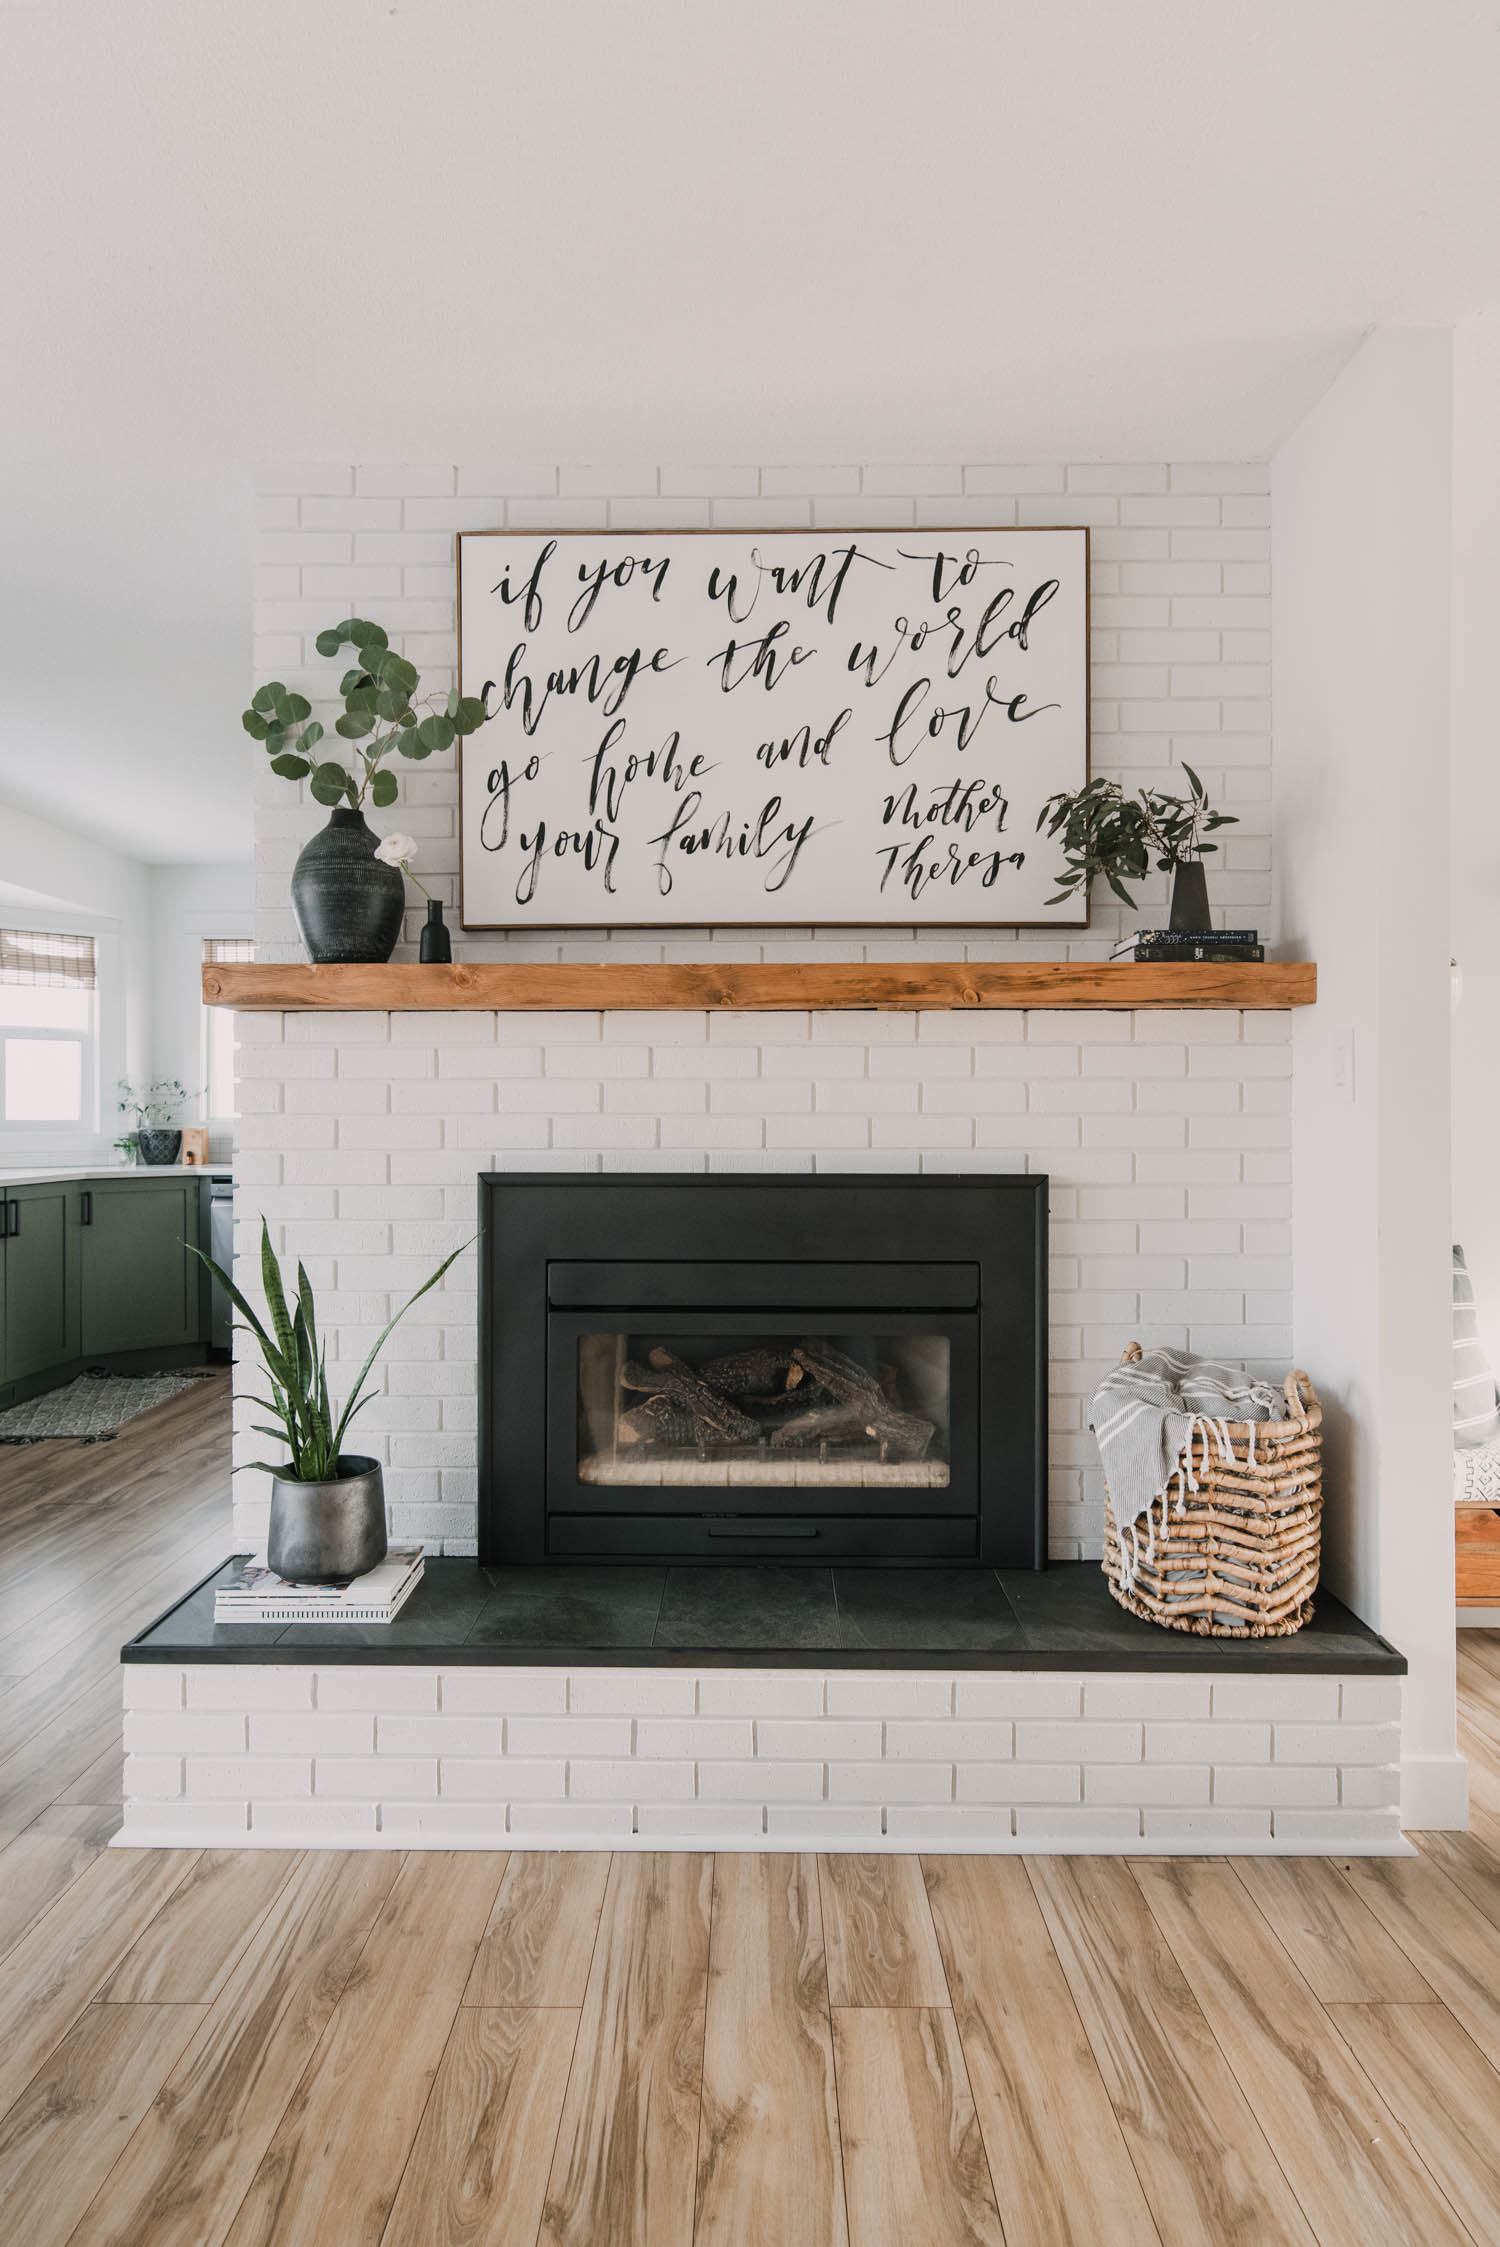 Fireplace Wall Paint Ideas Green new york 2021